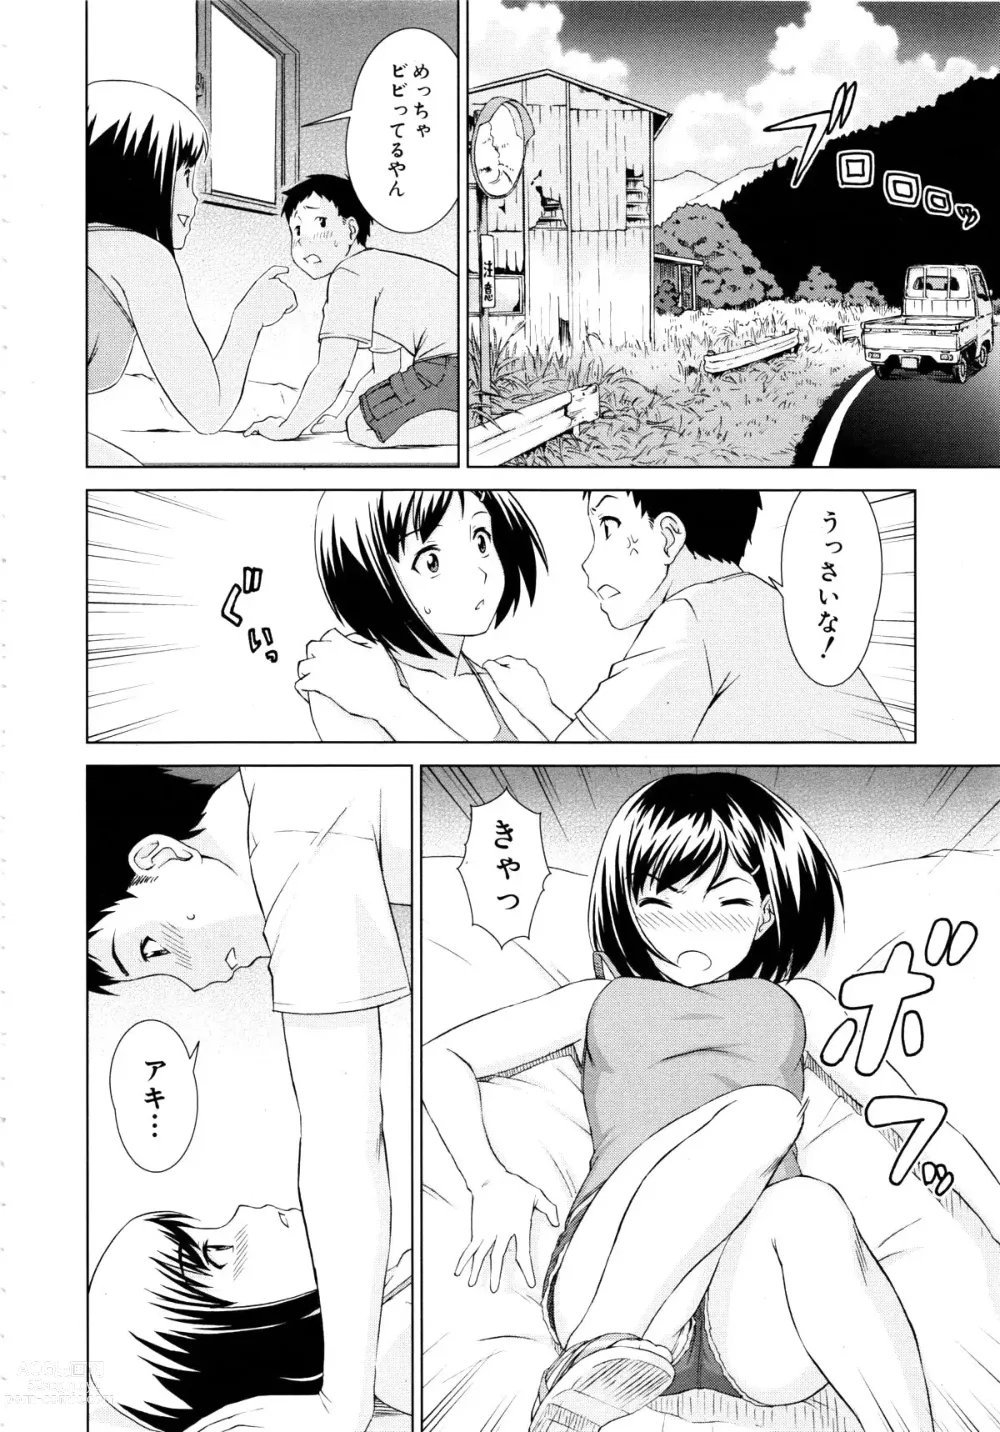 Page 6 of manga Natsu no Hi